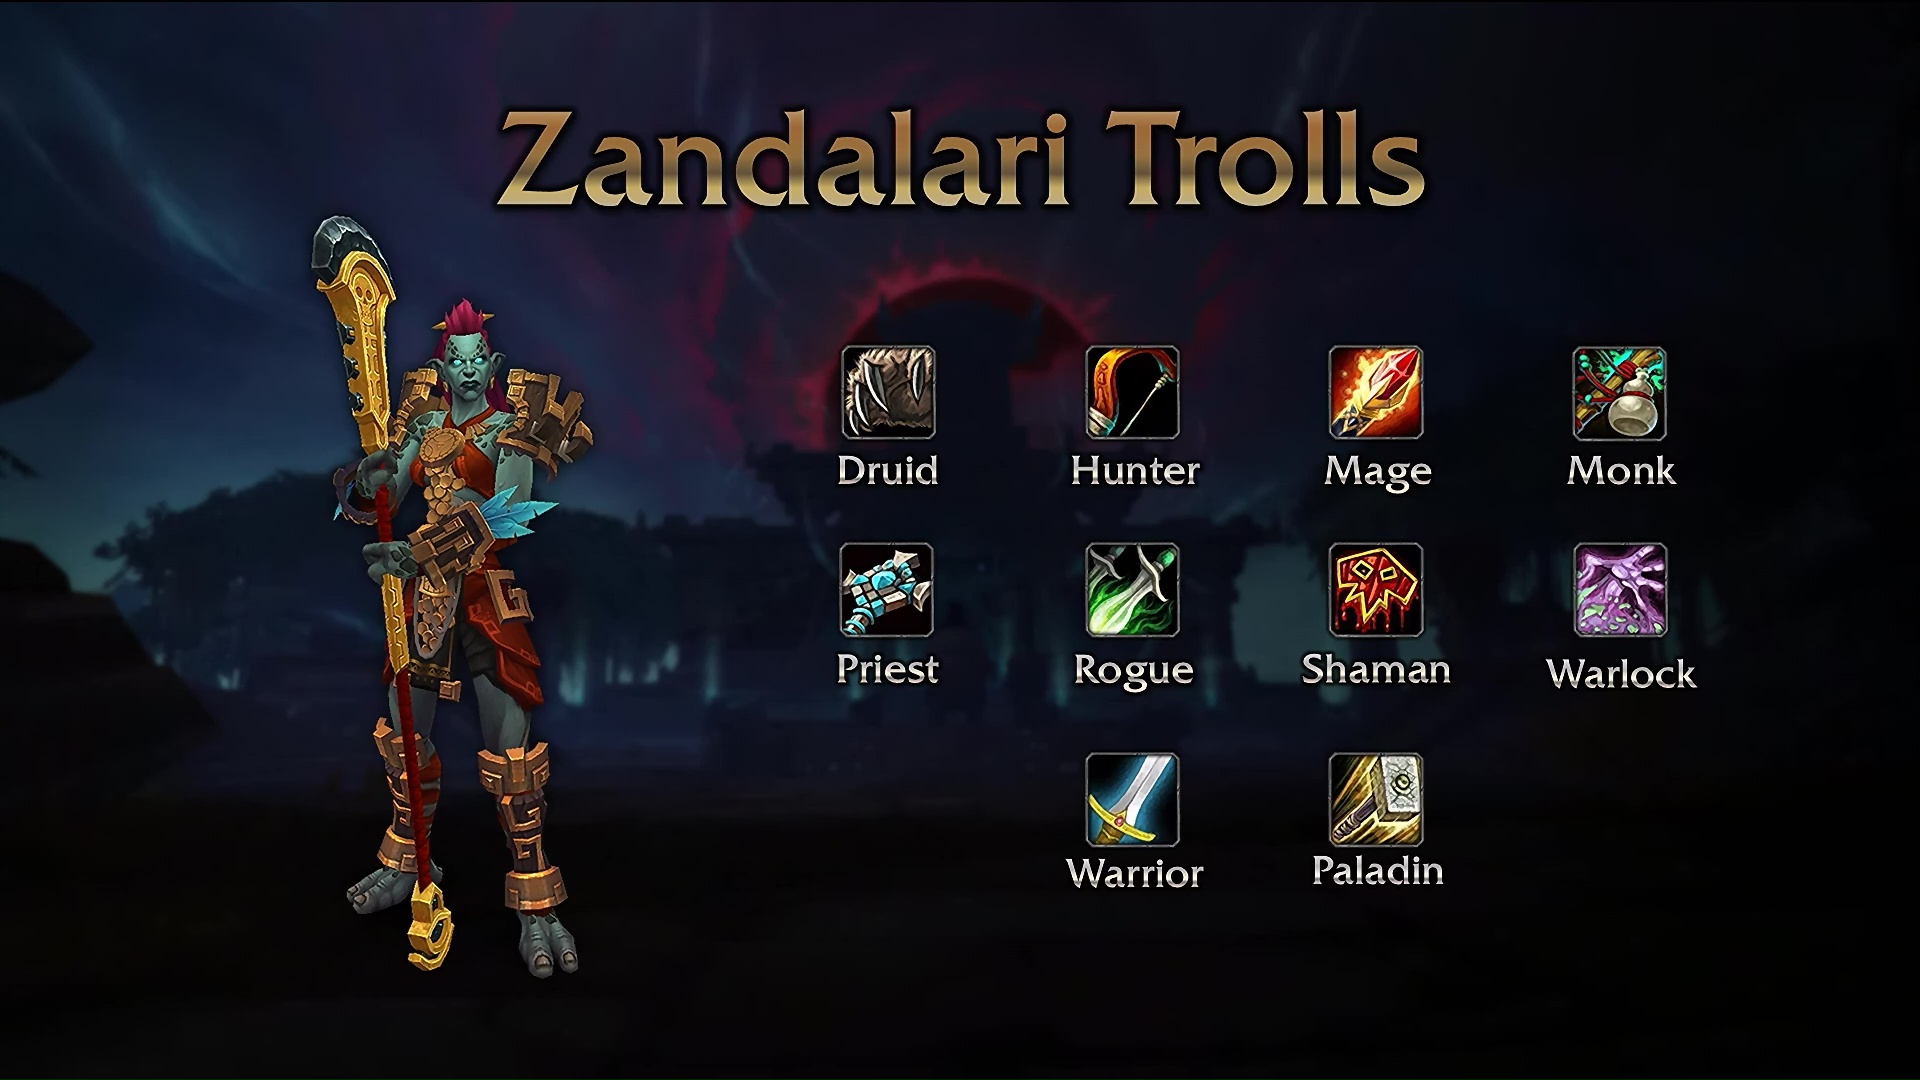 Zandalari troll paladins